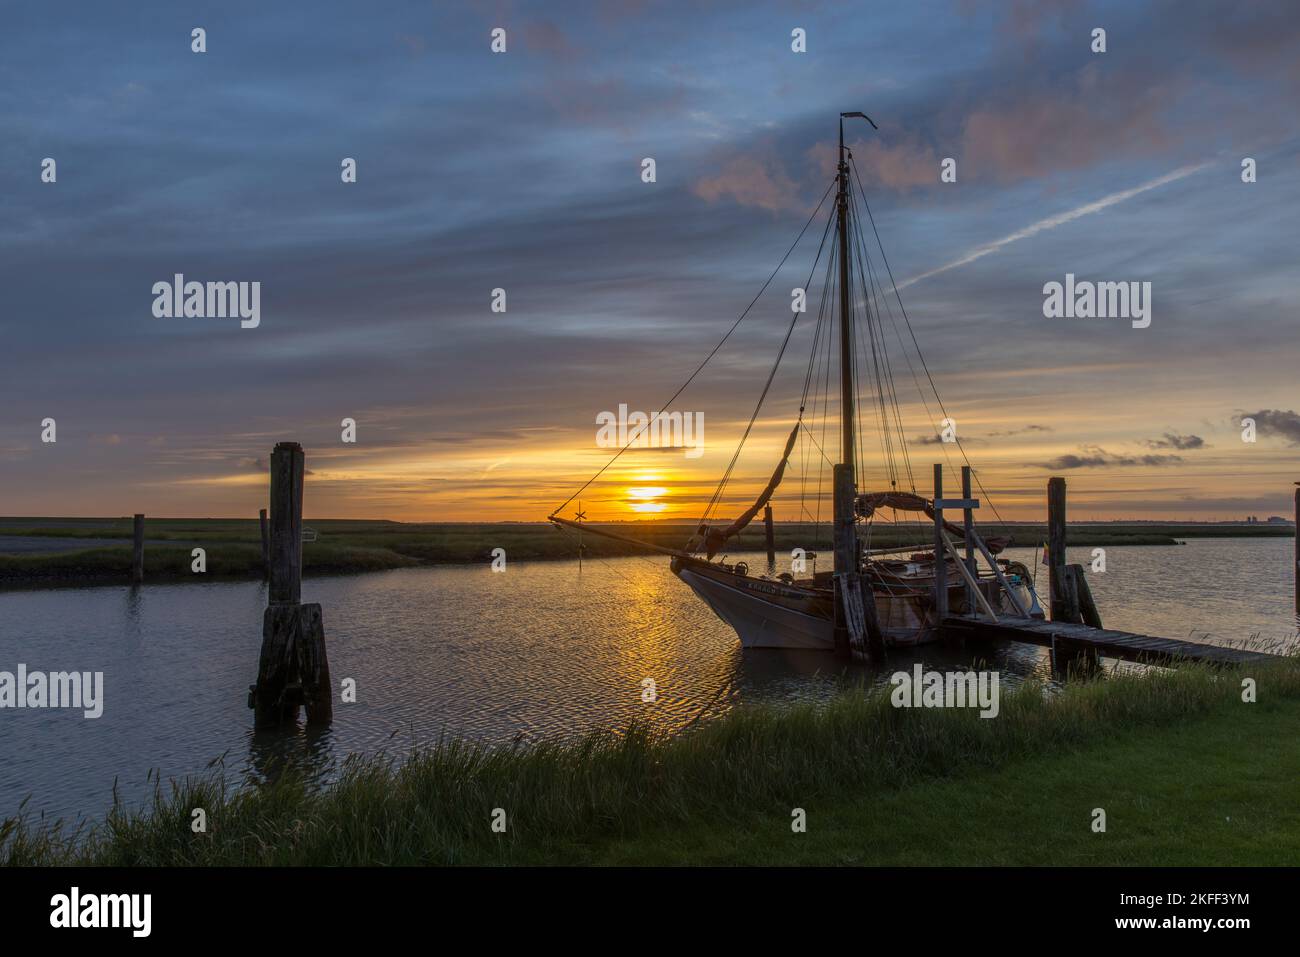 Sonnenaufgang mit Segelschiff am Süderhafen, Insel Nordstrand, Nordfriesland, Schleswig-Holstein, Allemagne Banque D'Images